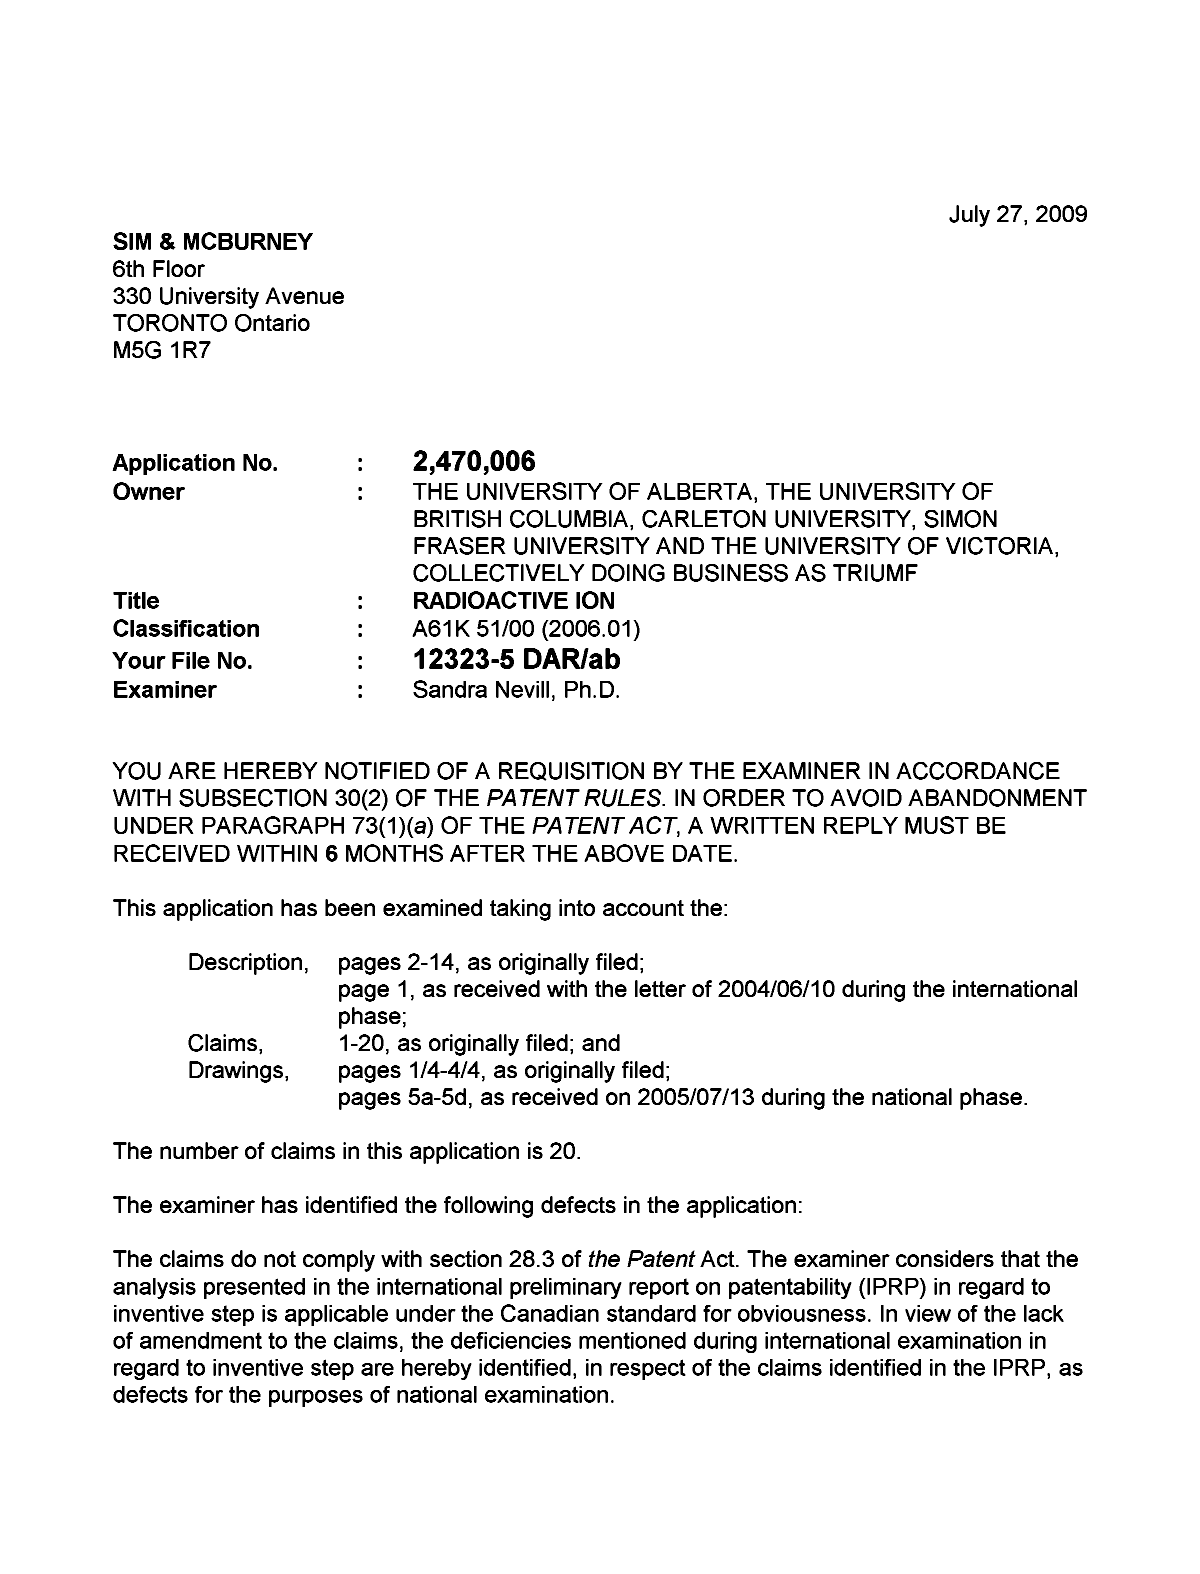 Document de brevet canadien 2470006. Poursuite-Amendment 20090727. Image 1 de 2